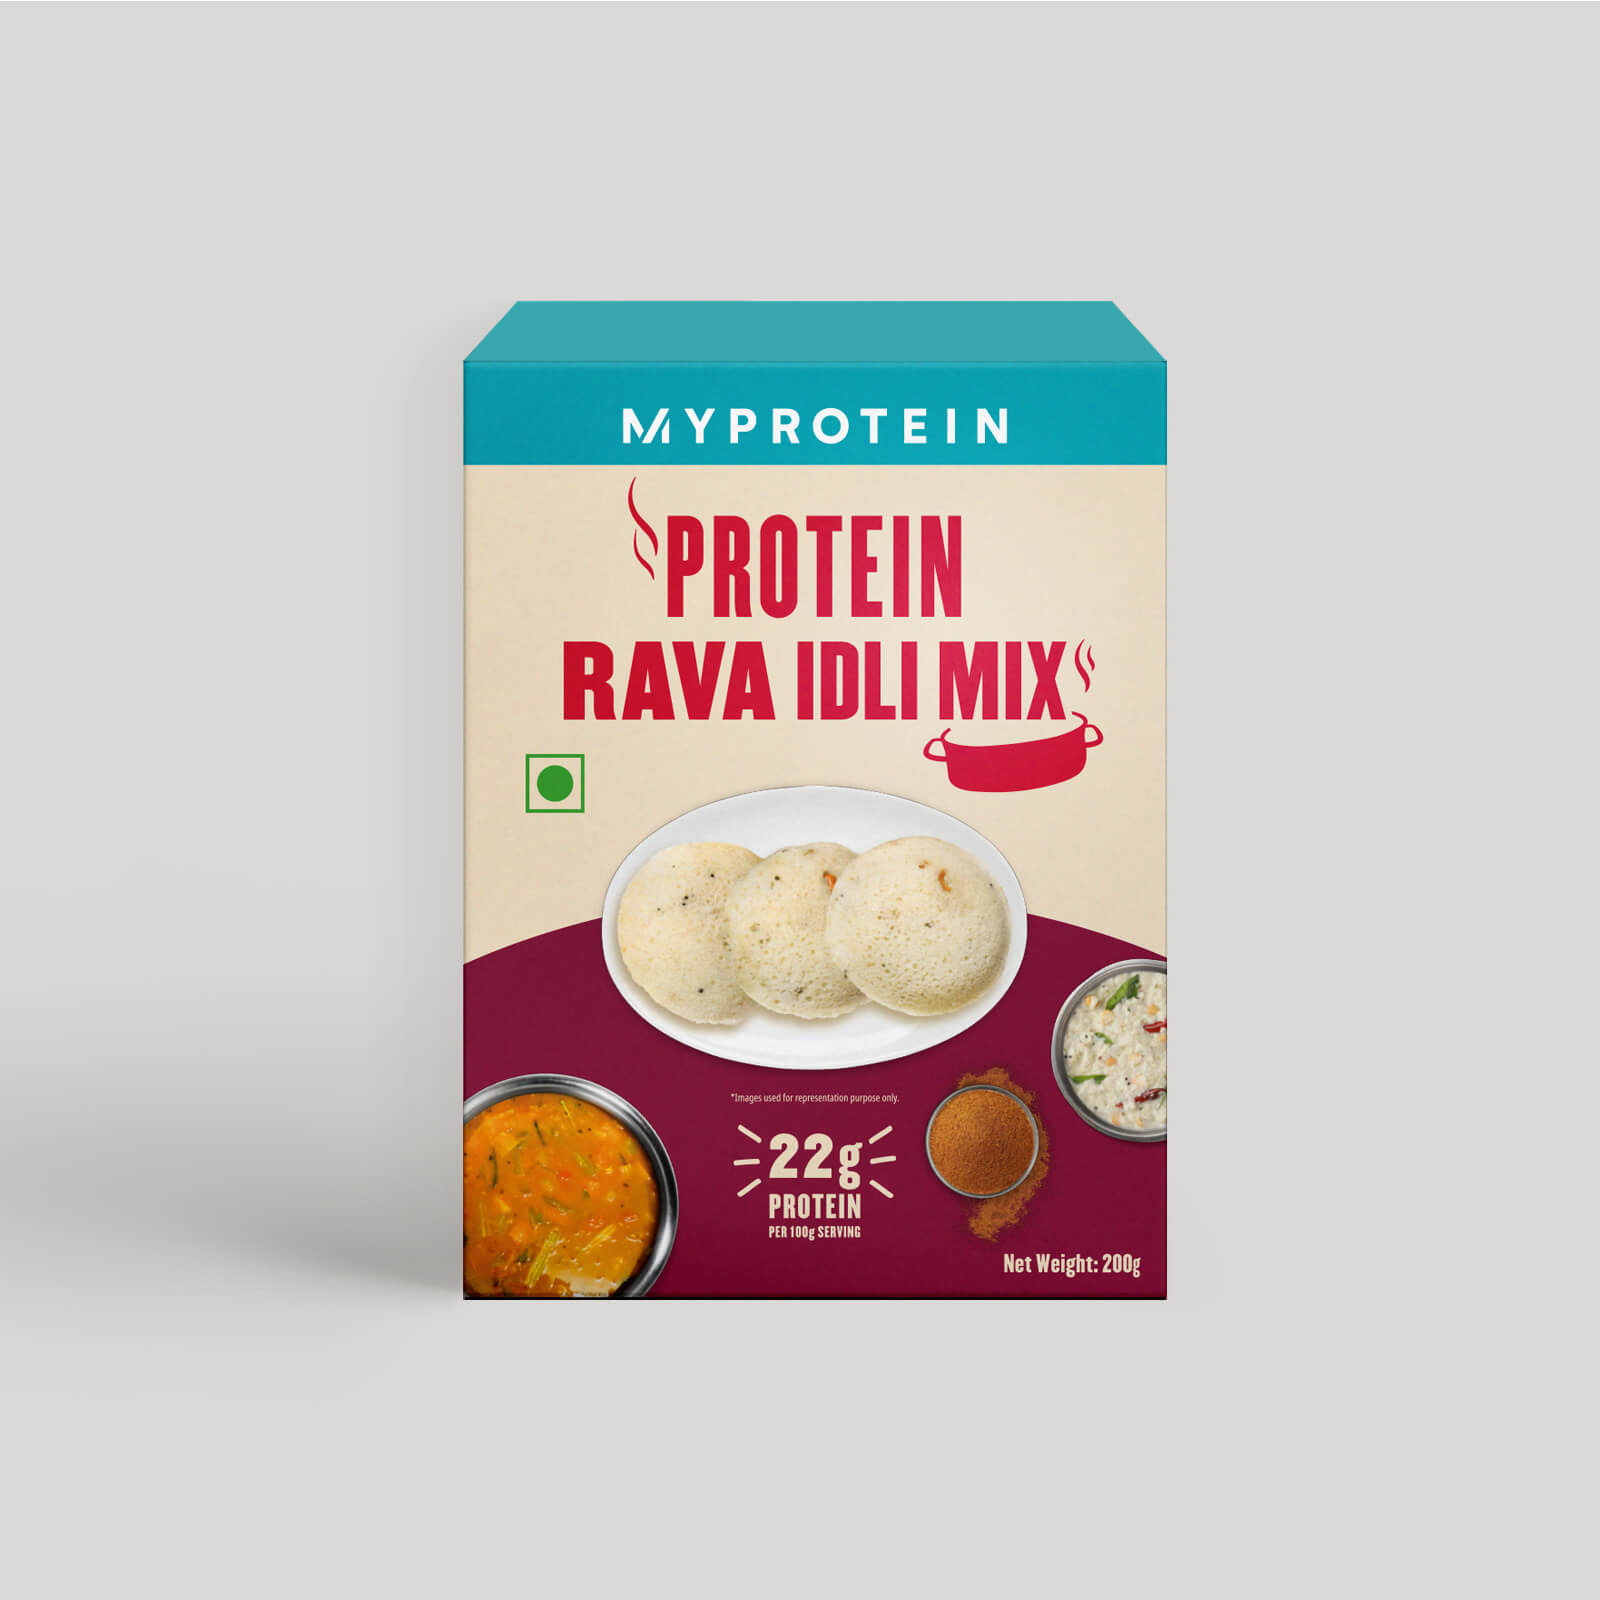 Protein Rava Idli Mix - 200g